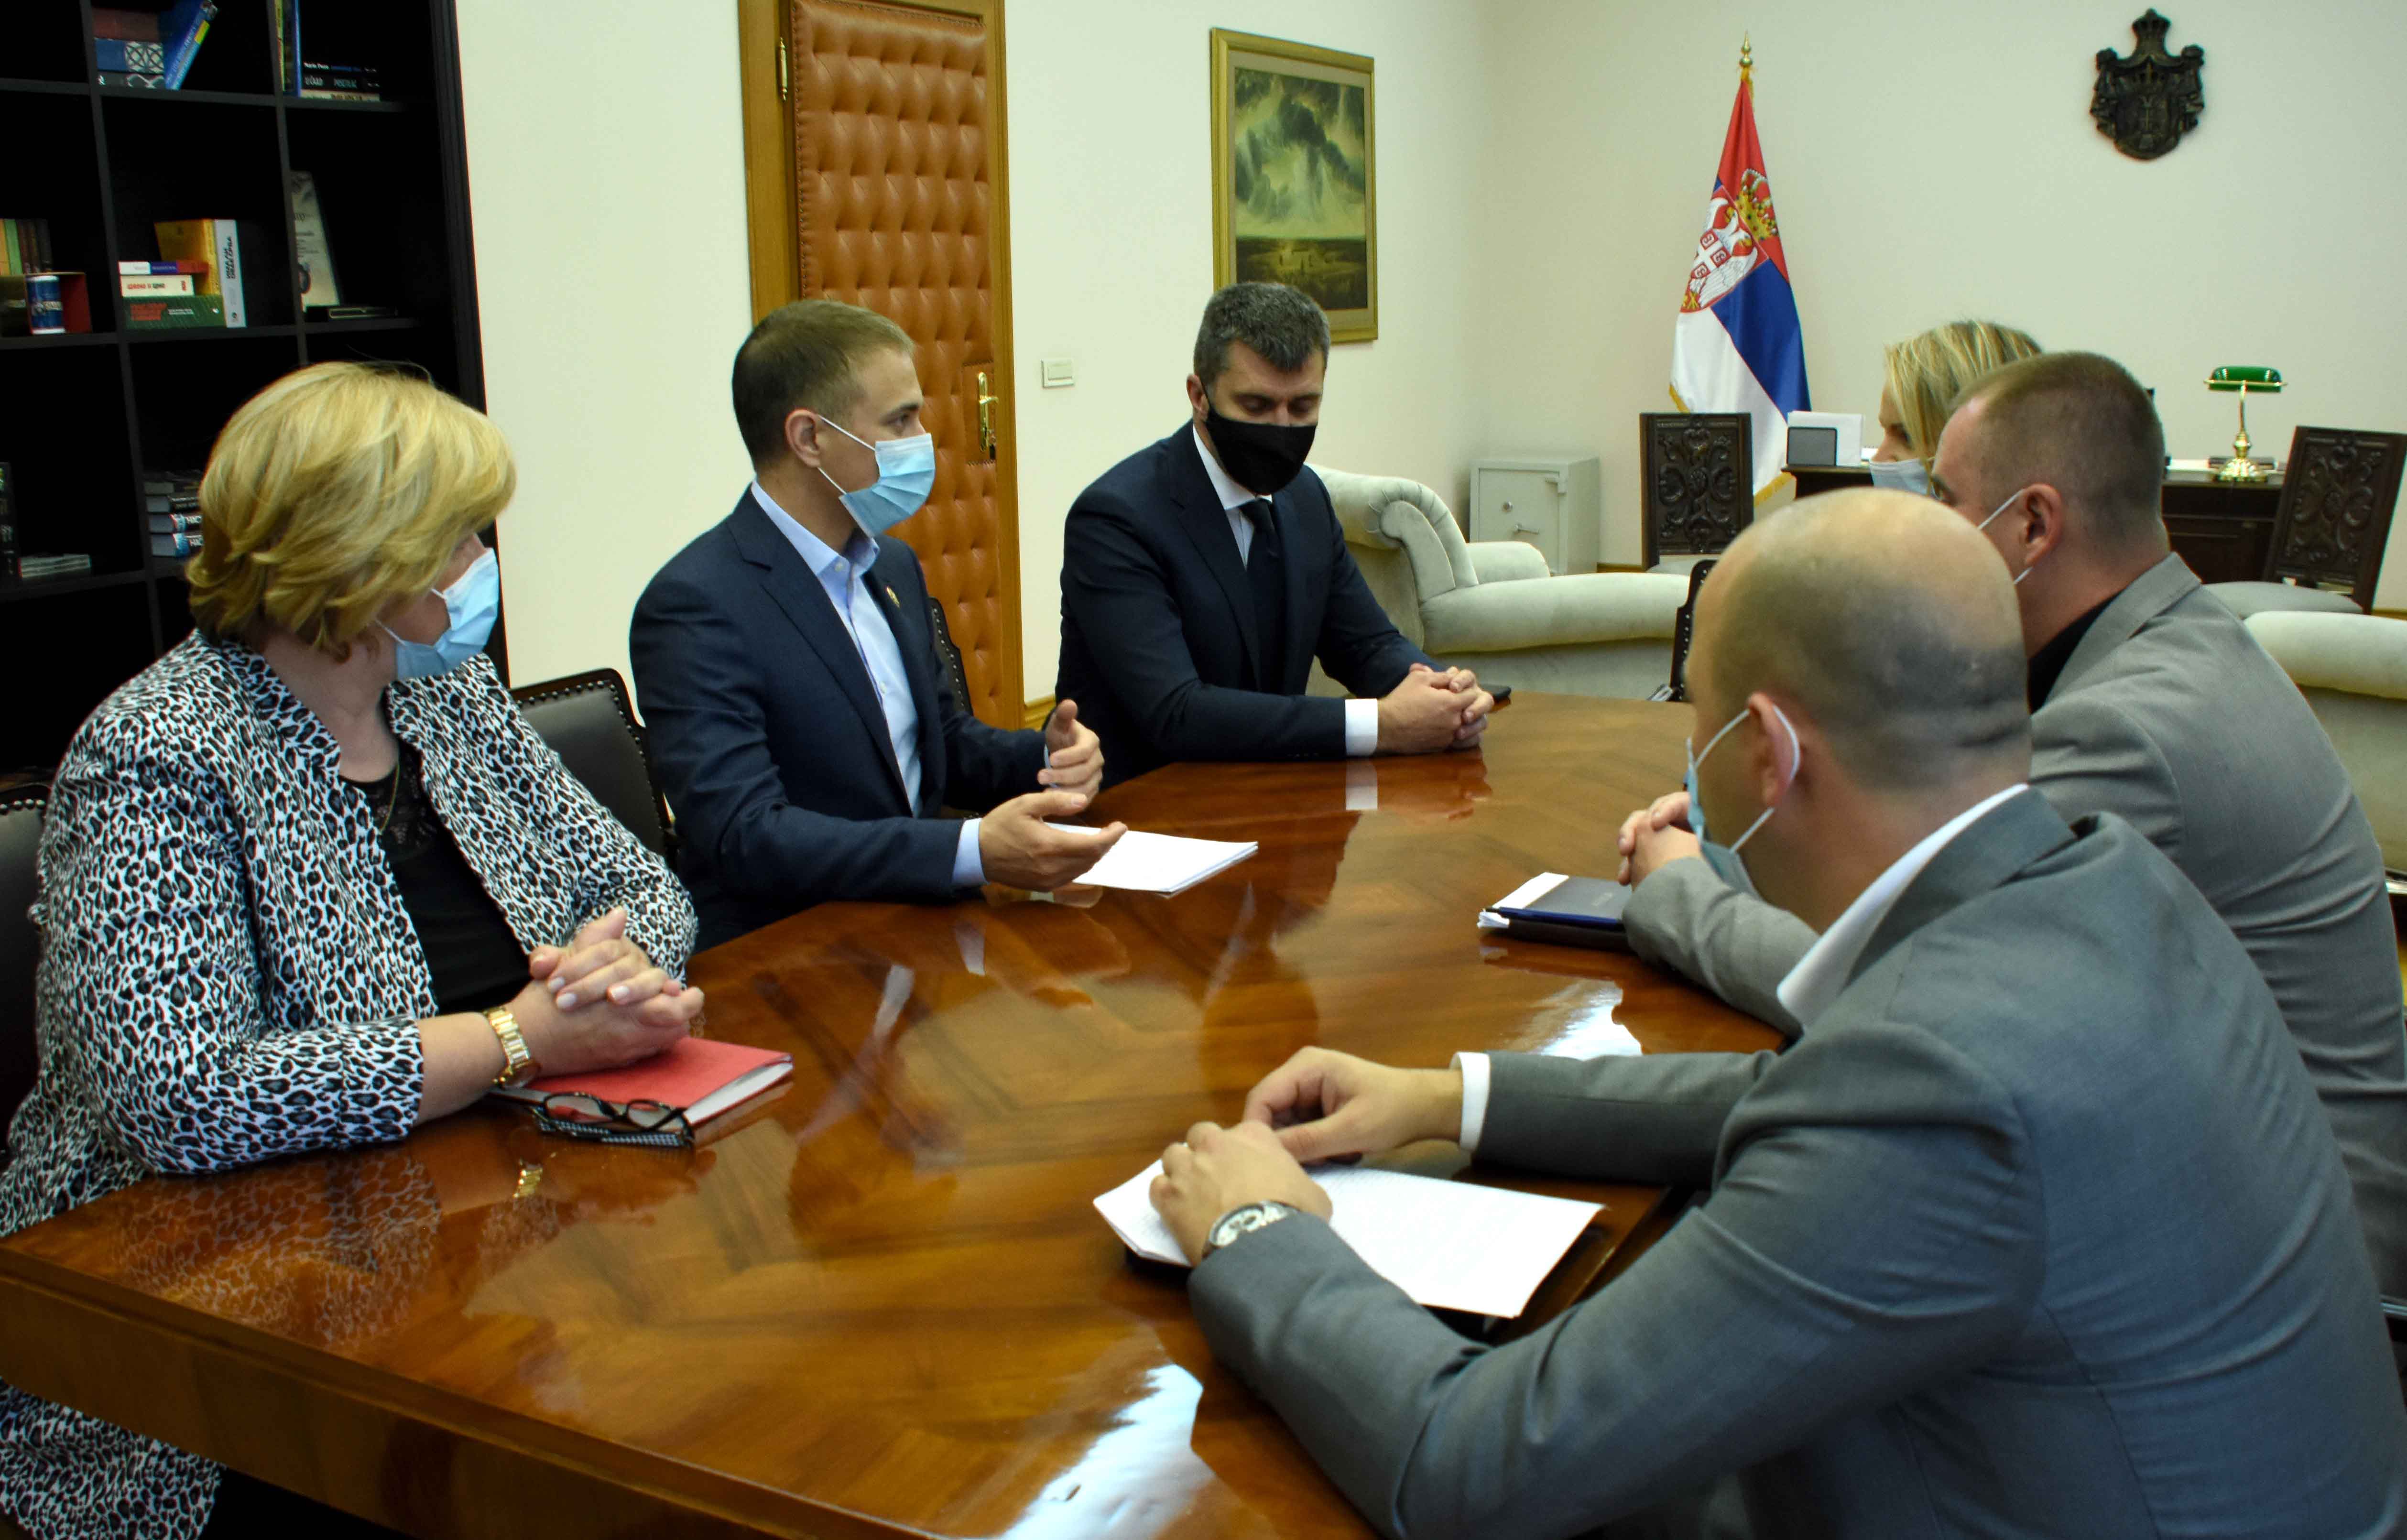 	Ministar Stefanović razgovarao sa ministrom Zoranom Đorđevićem i predstavnicima Nezavisnog sindikata policije